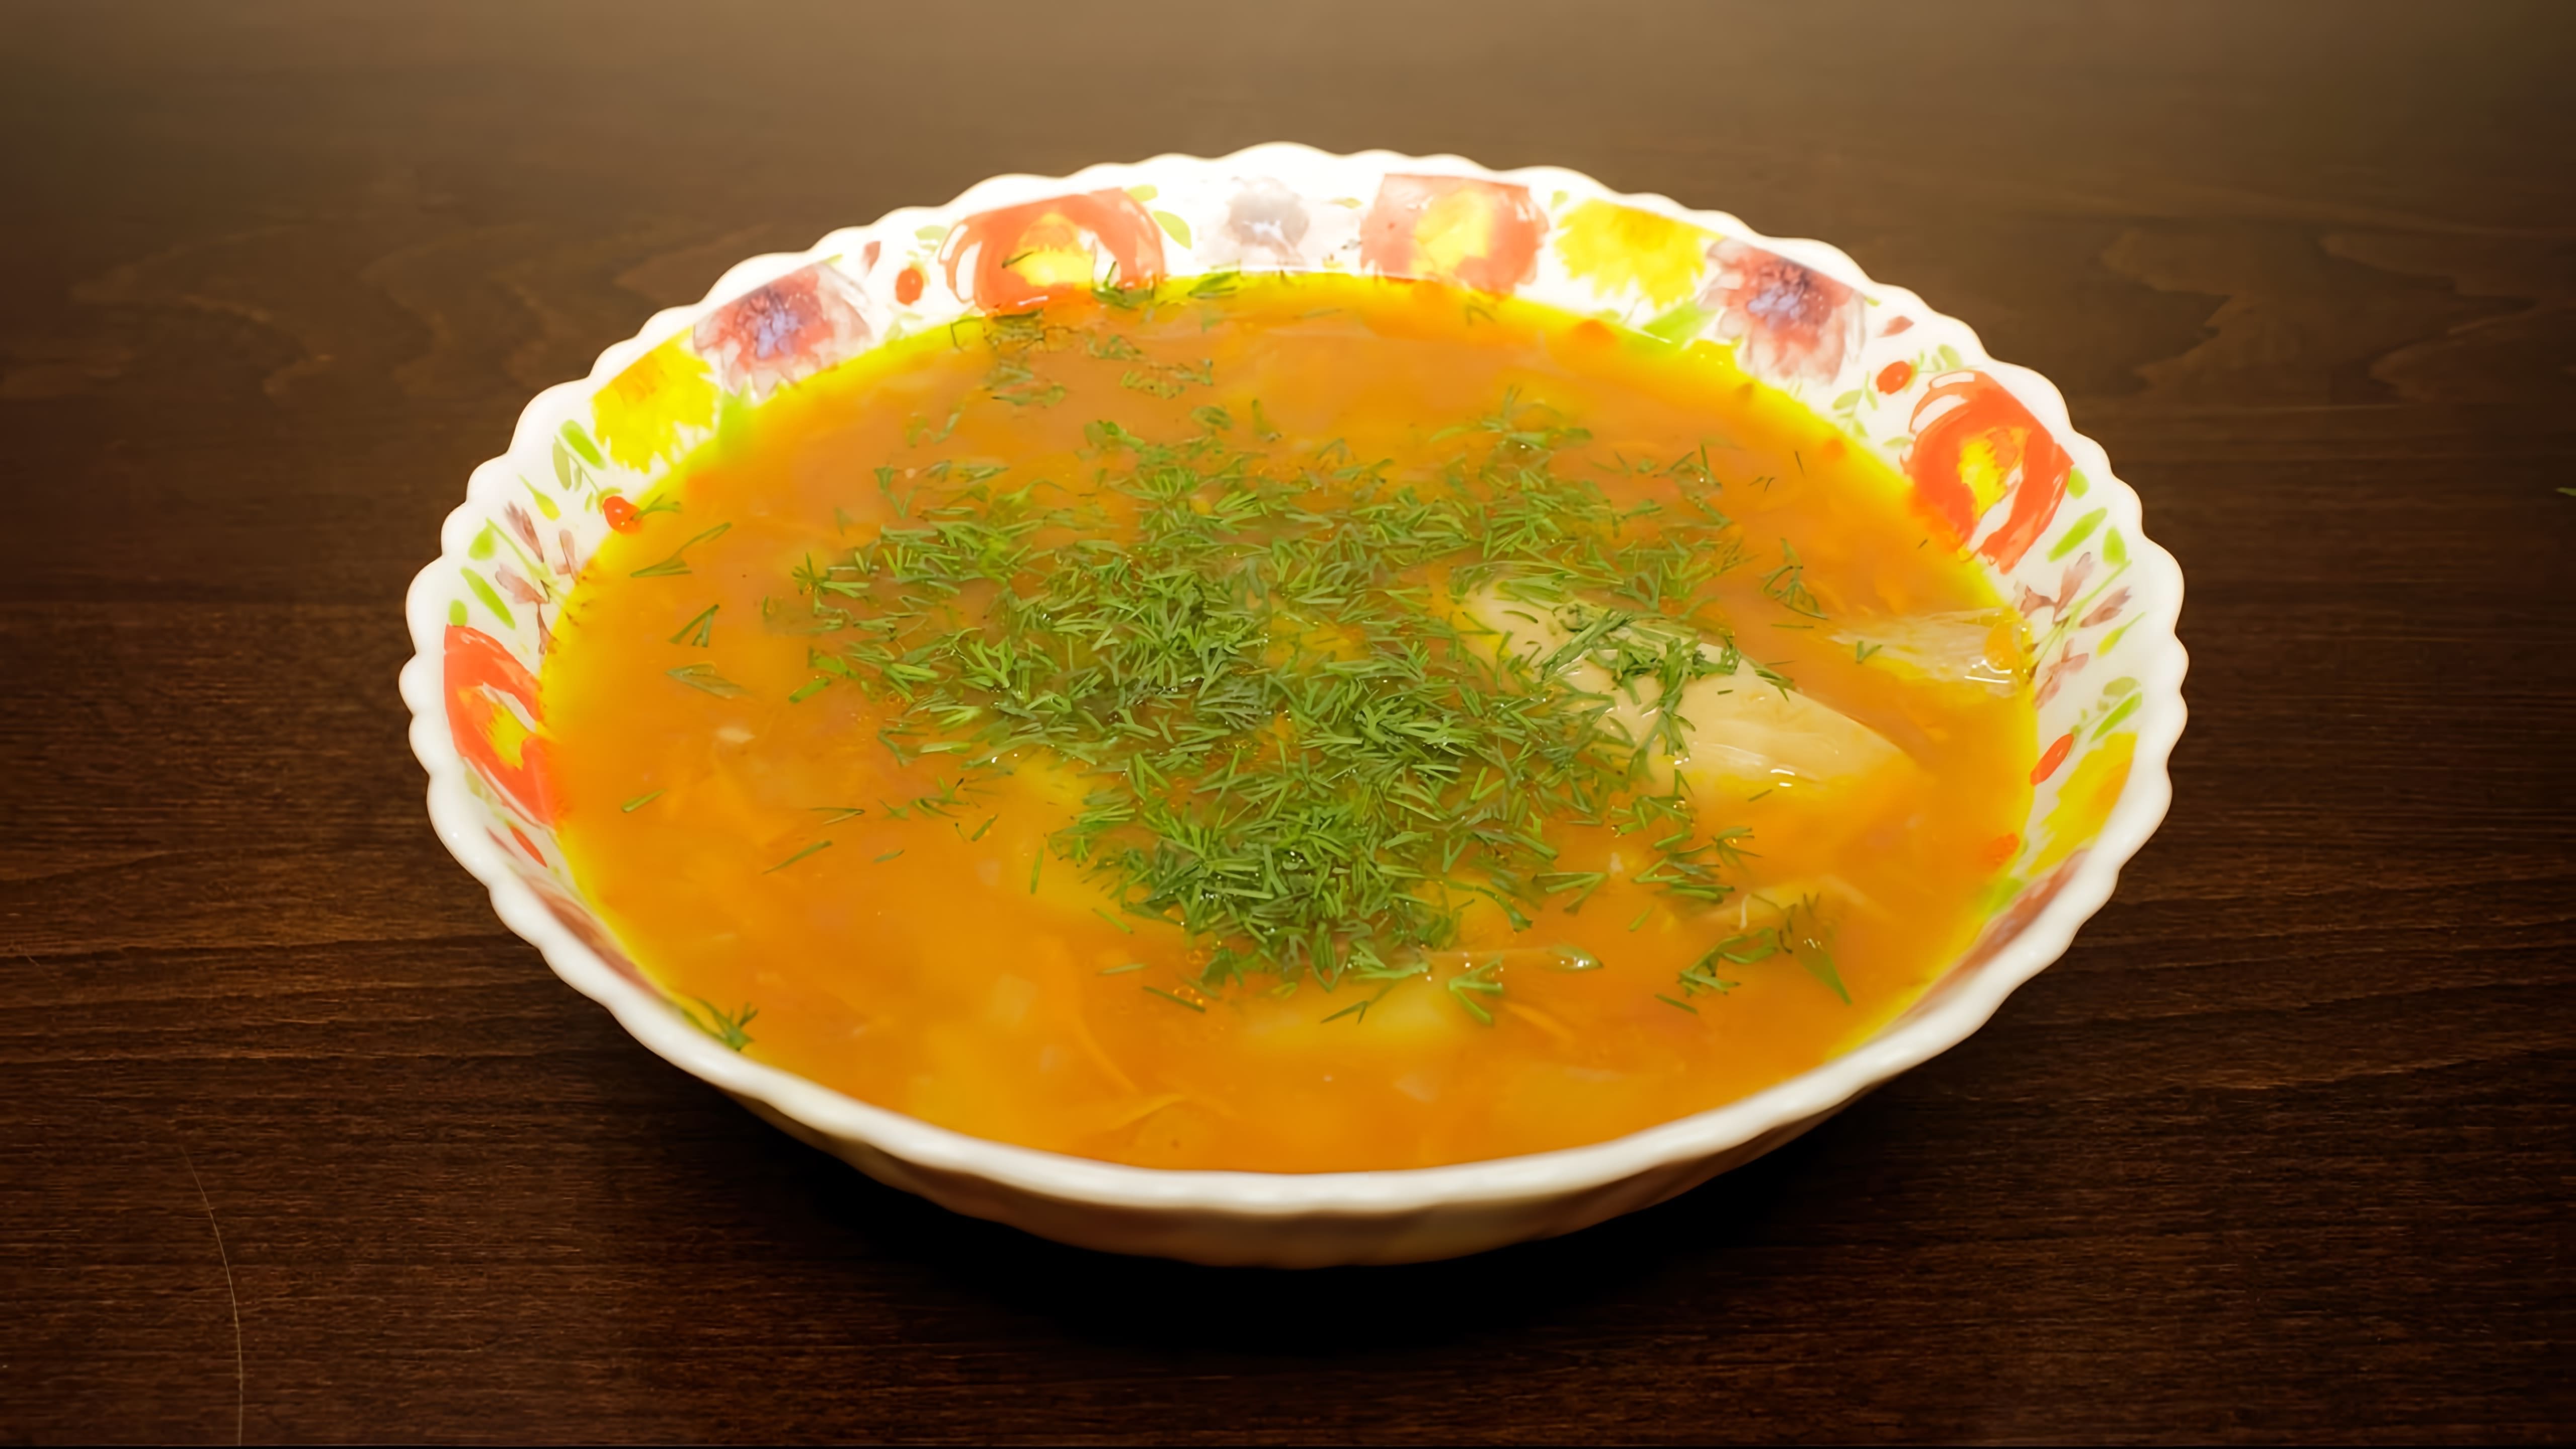 В этом видео демонстрируется рецепт приготовления фасолевого супа в мультиварке